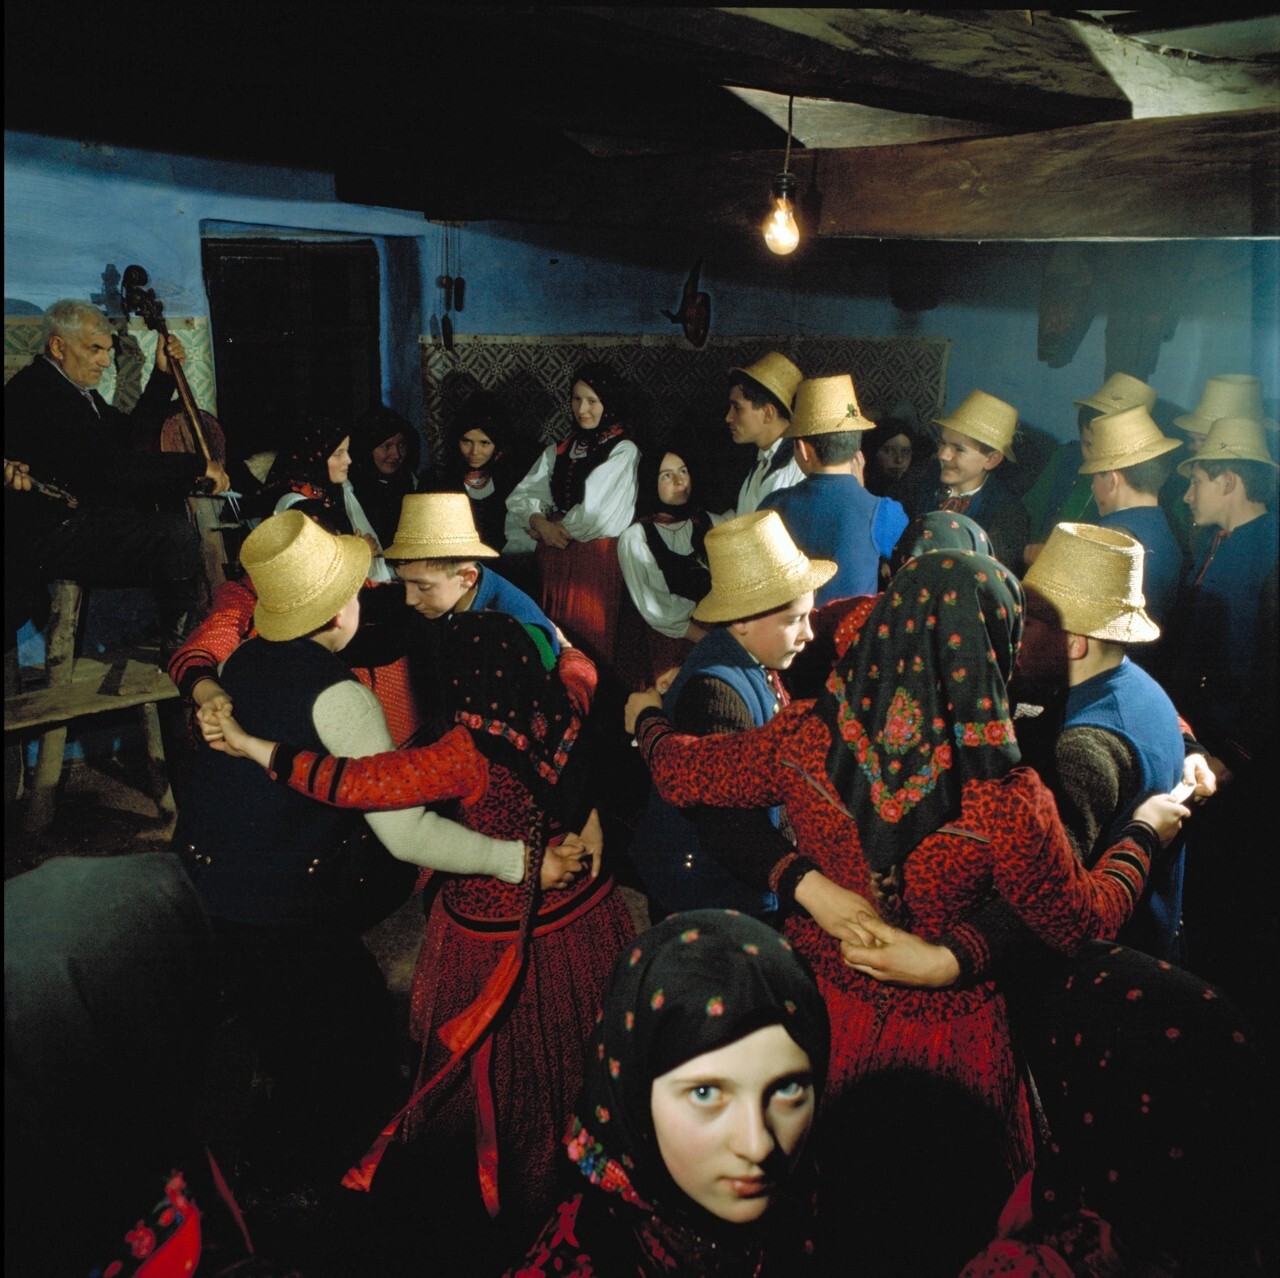 Вечер народных танцев. Венгерская деревня, 1971. Фотограф Петер Корниш